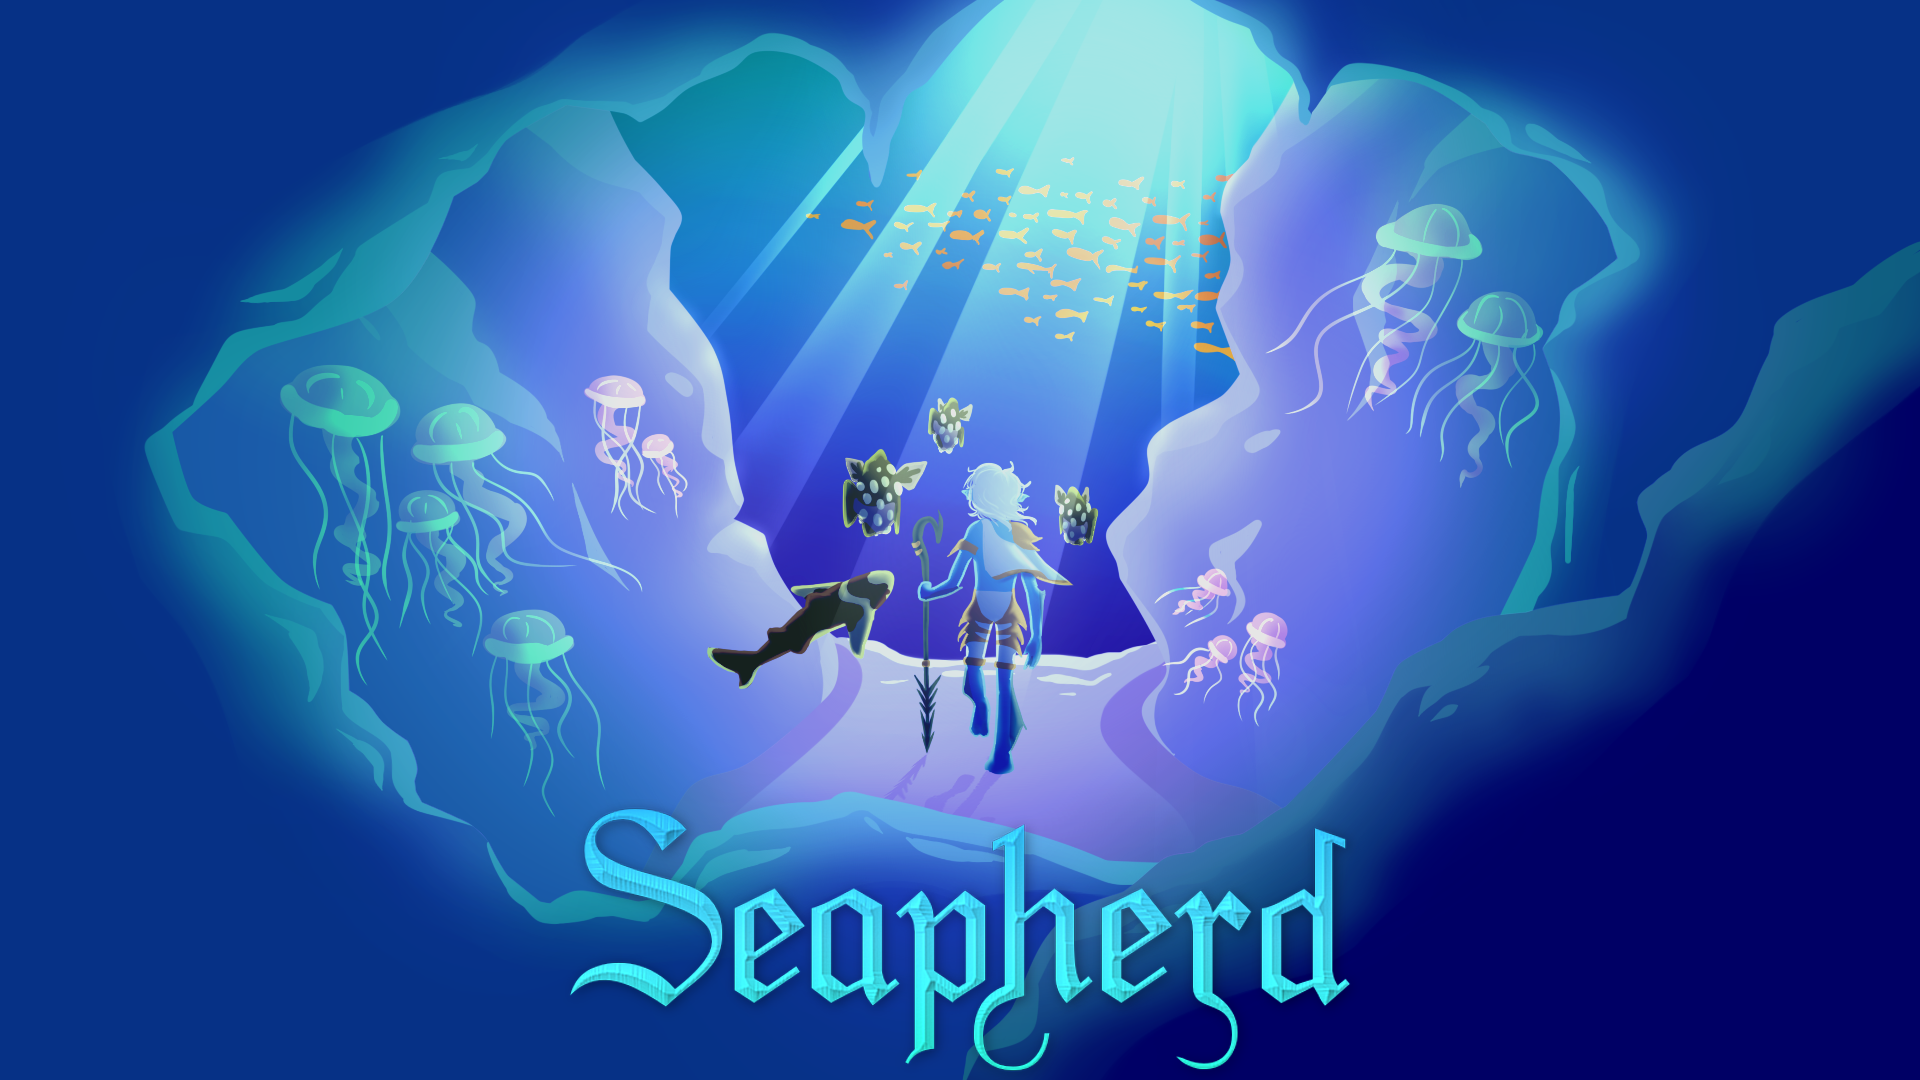 Seapherd